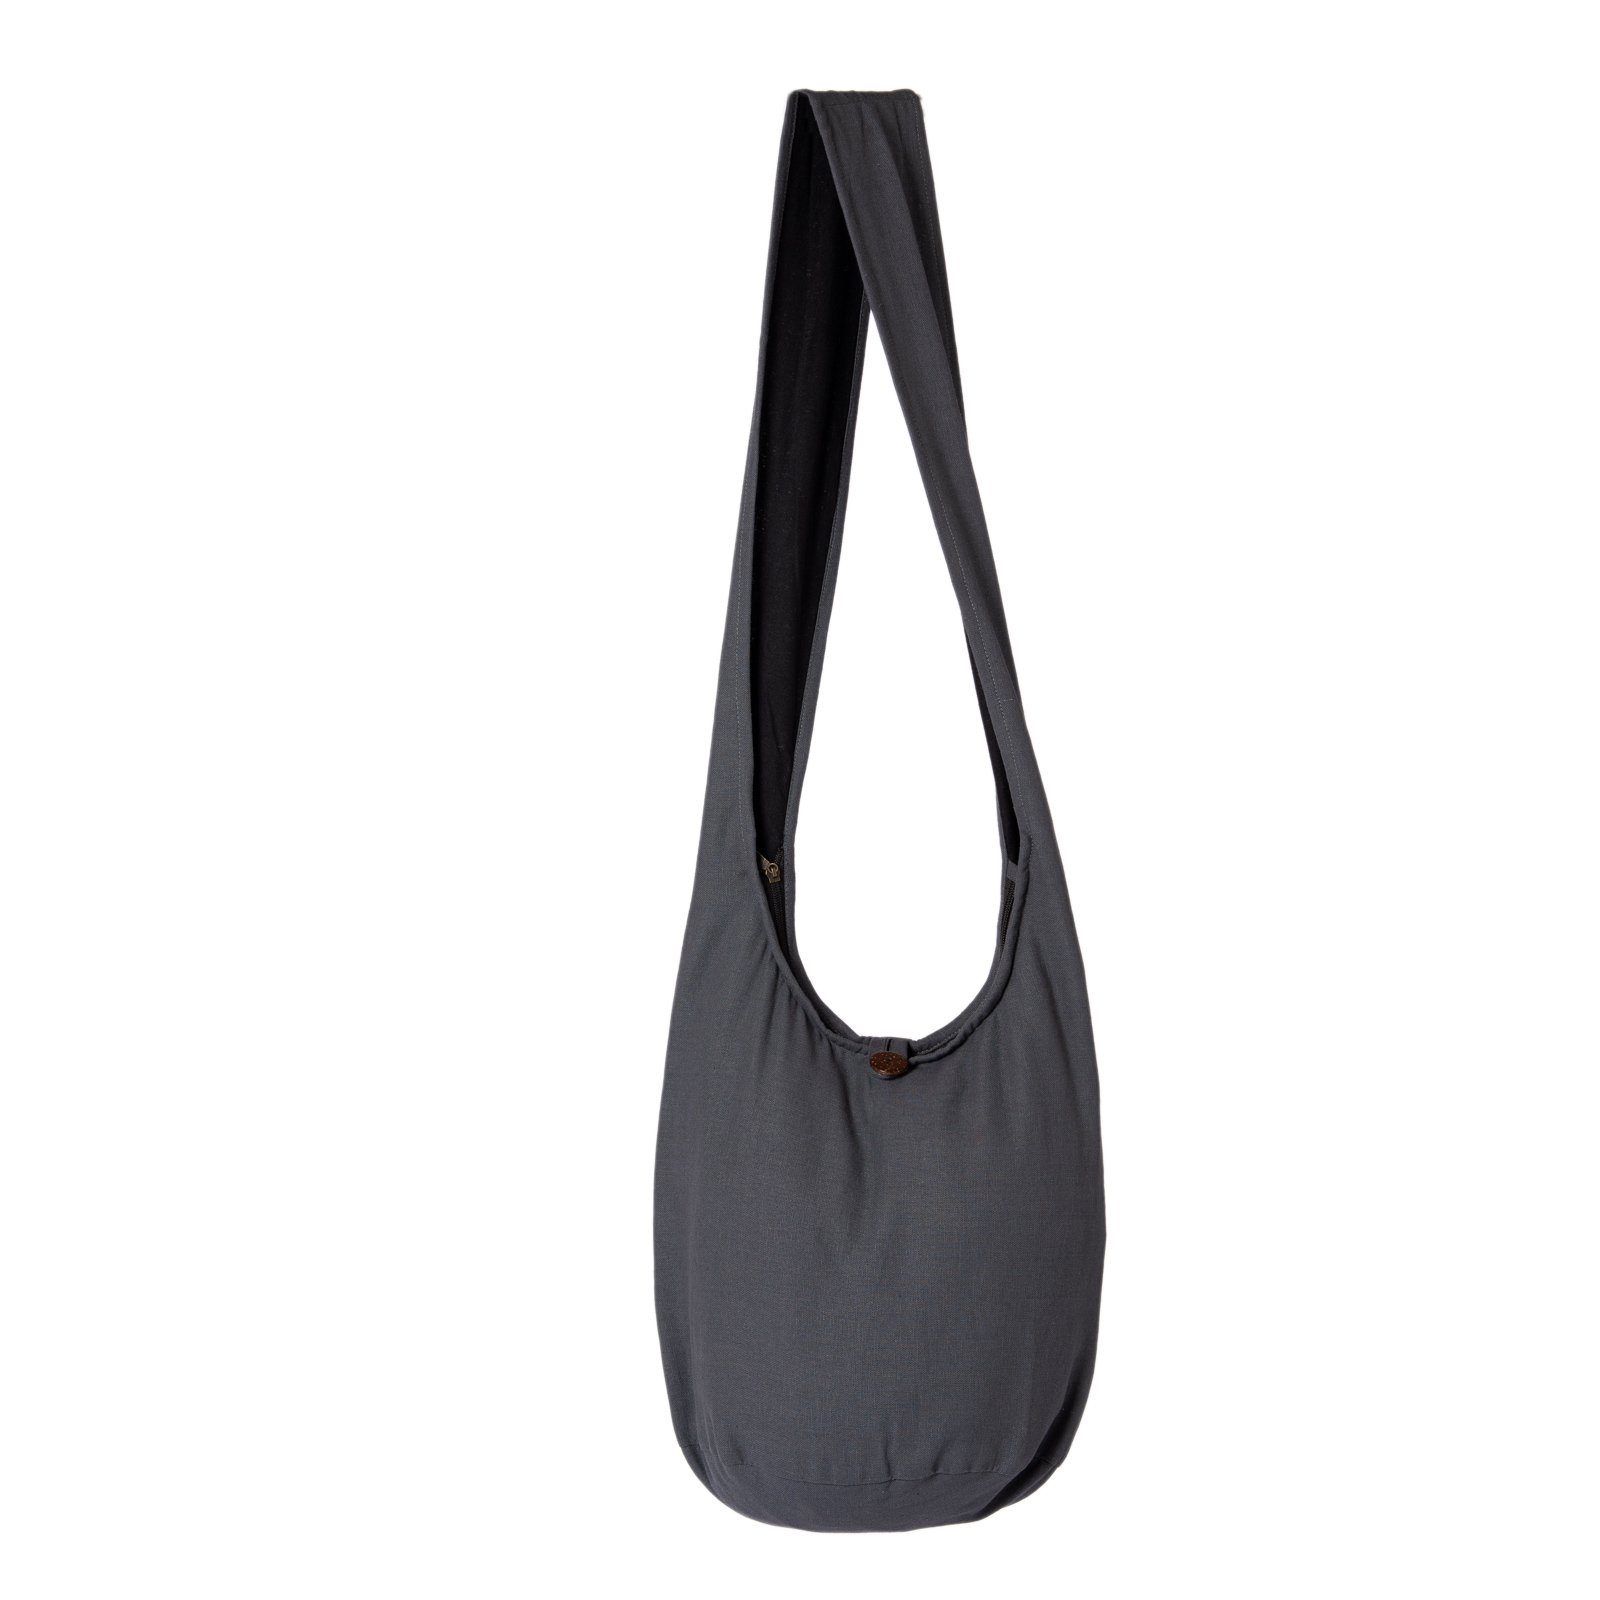 PANASIAM Beuteltasche Schulterbeutel als Schultertasche Strandtasche Handtasche in Umhängetasche 2 auch Größen, grau Baumwolle Wickeltasche aus einfarbig 100% oder